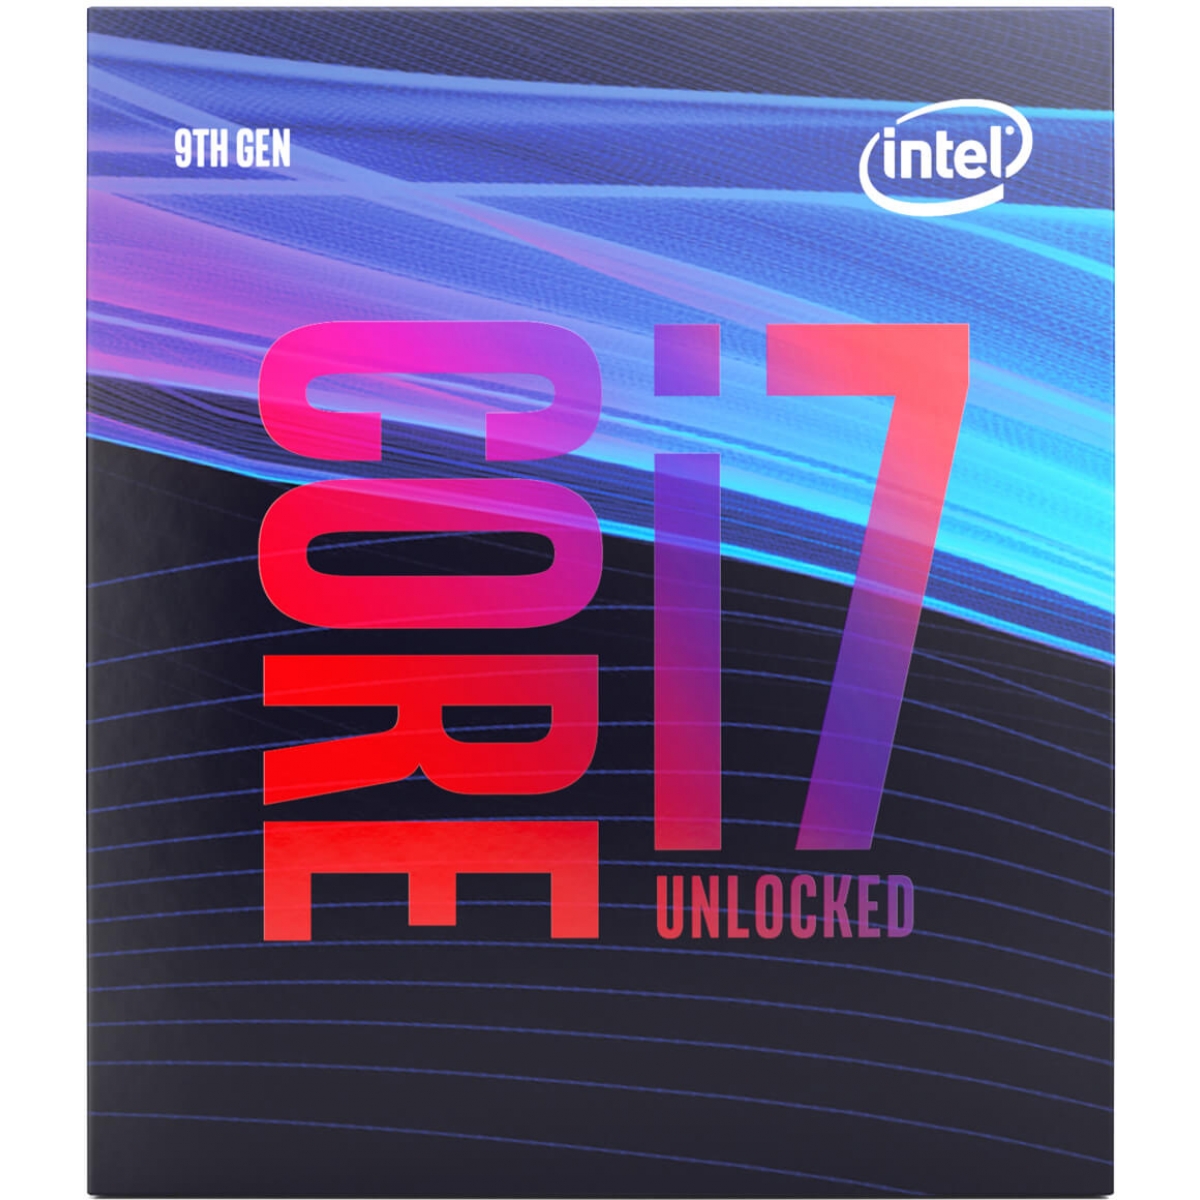 Processador Intel Core i7 9700K 3.60GHz (4.90GHz Turbo), 9ª Geração, 8-Core 8-Thread, LGA 1151, BX80684I79700K - Open Box